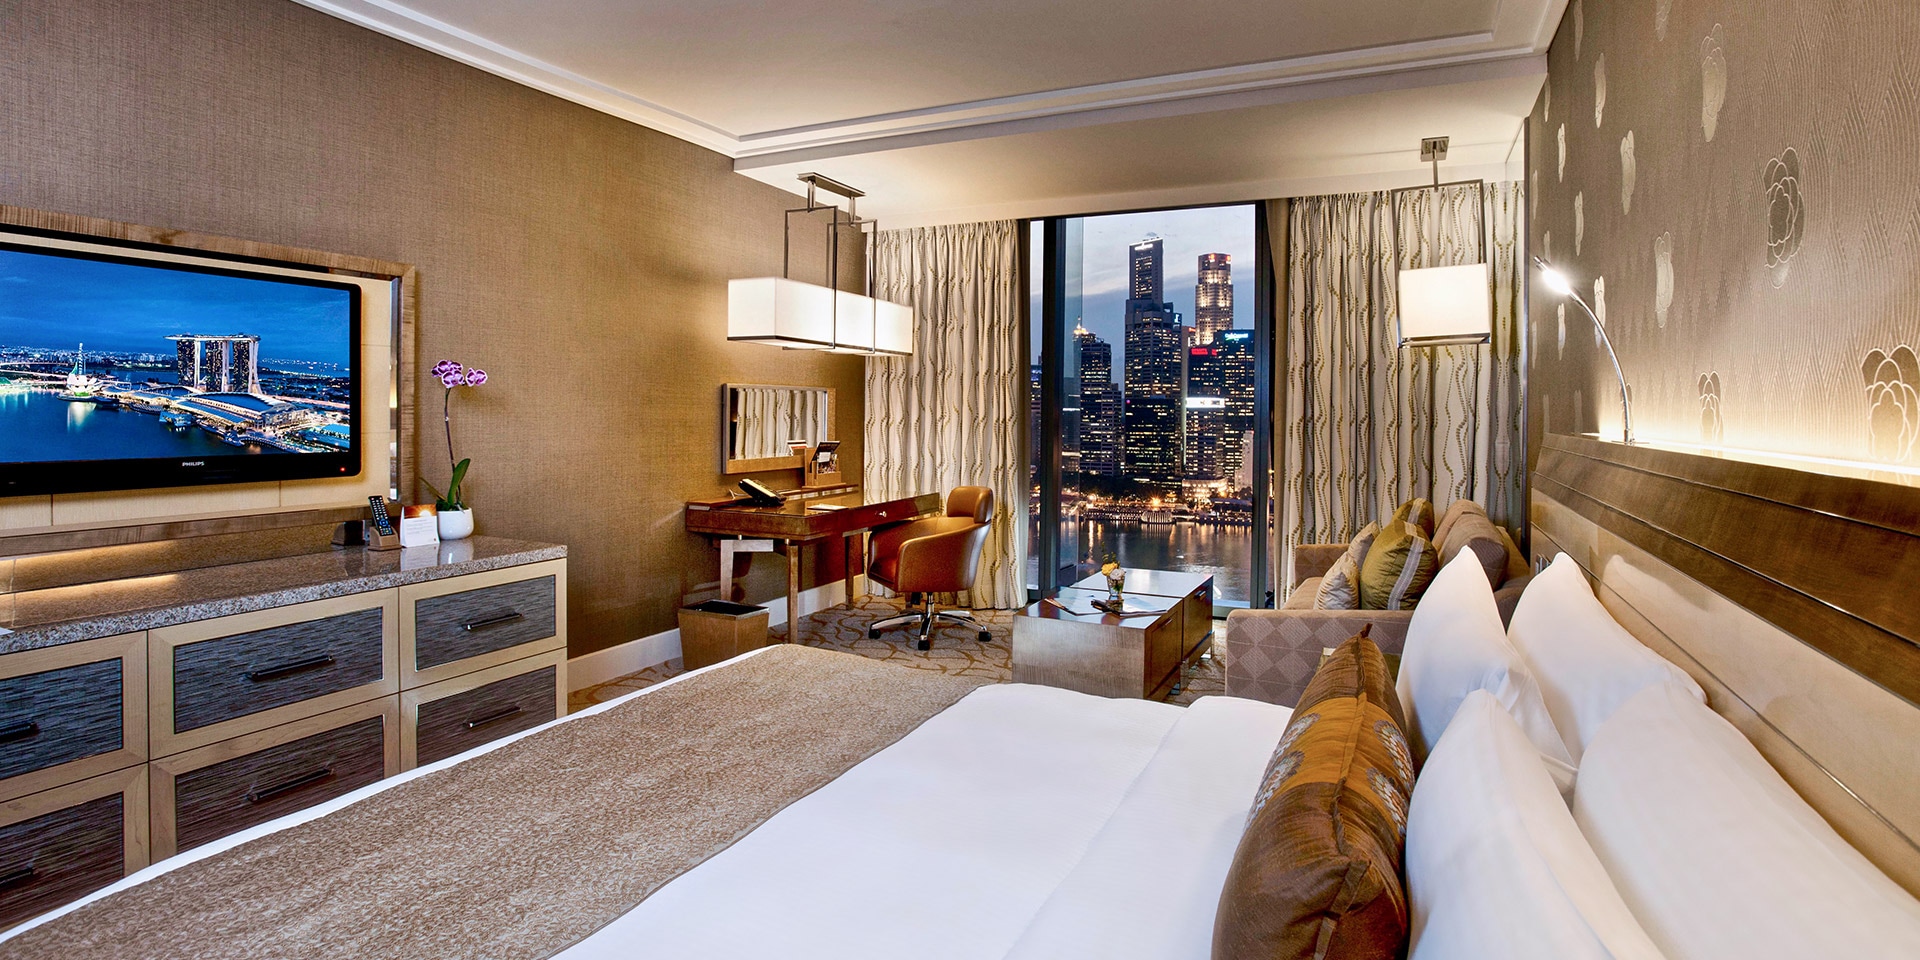 Deluxe Room di Marina Bay Sands dengan Tempat Tidur Berukuran King dan Pemandangan Kota